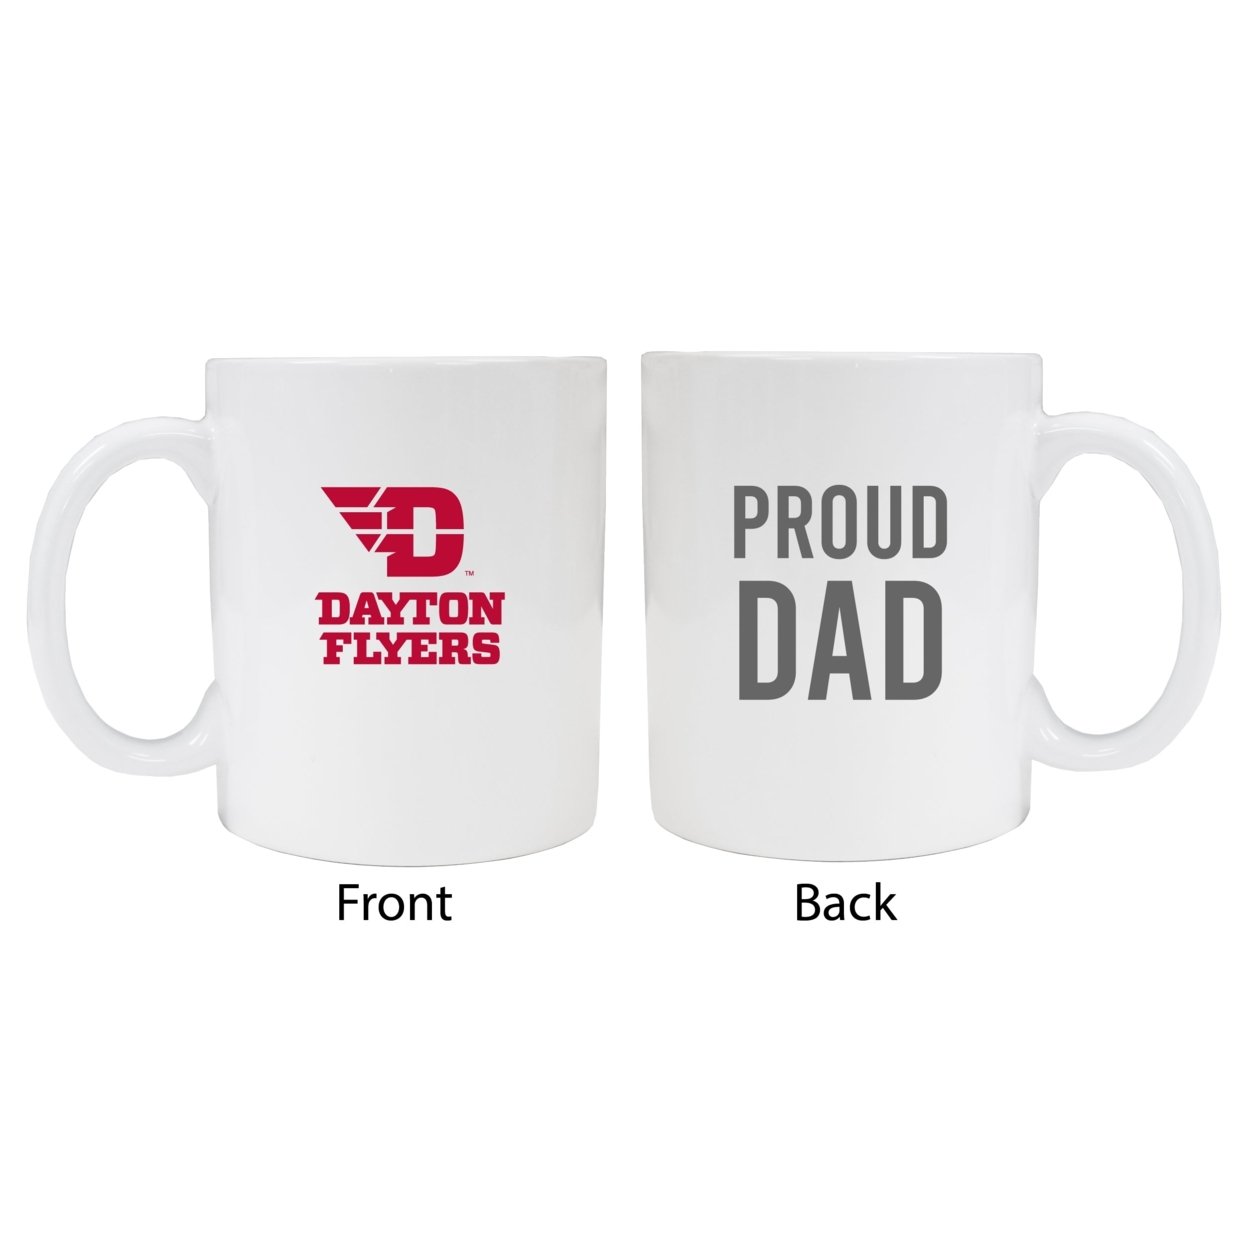 Dayton Flyers Proud Dad Ceramic Coffee Mug - White (2 Pack)